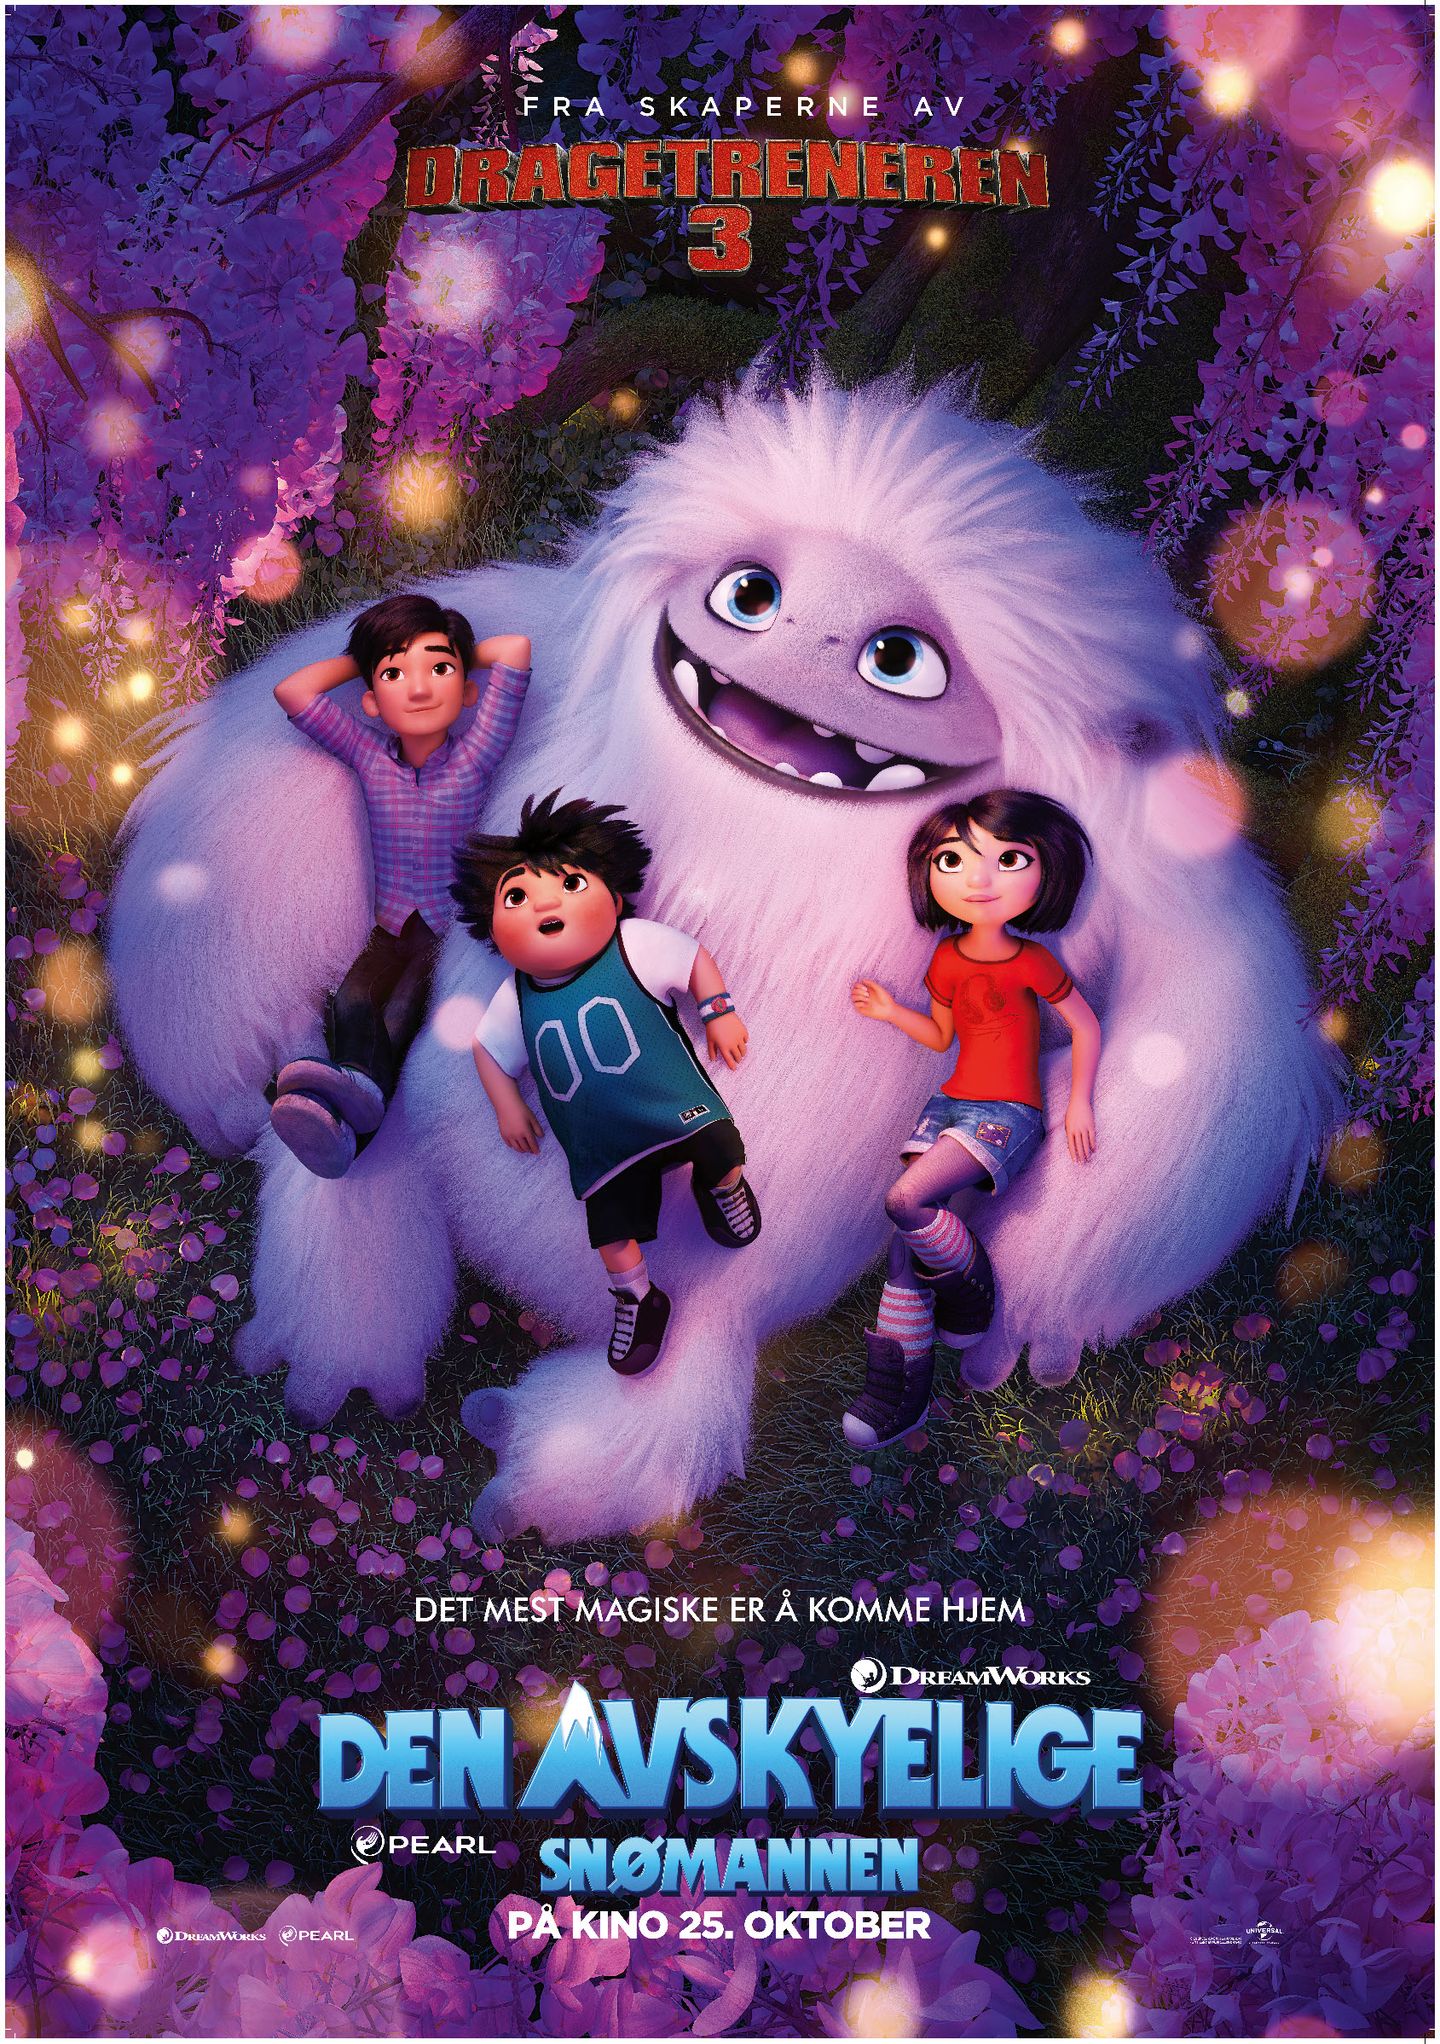 Plakat for 'Den avskyelige snømannen'